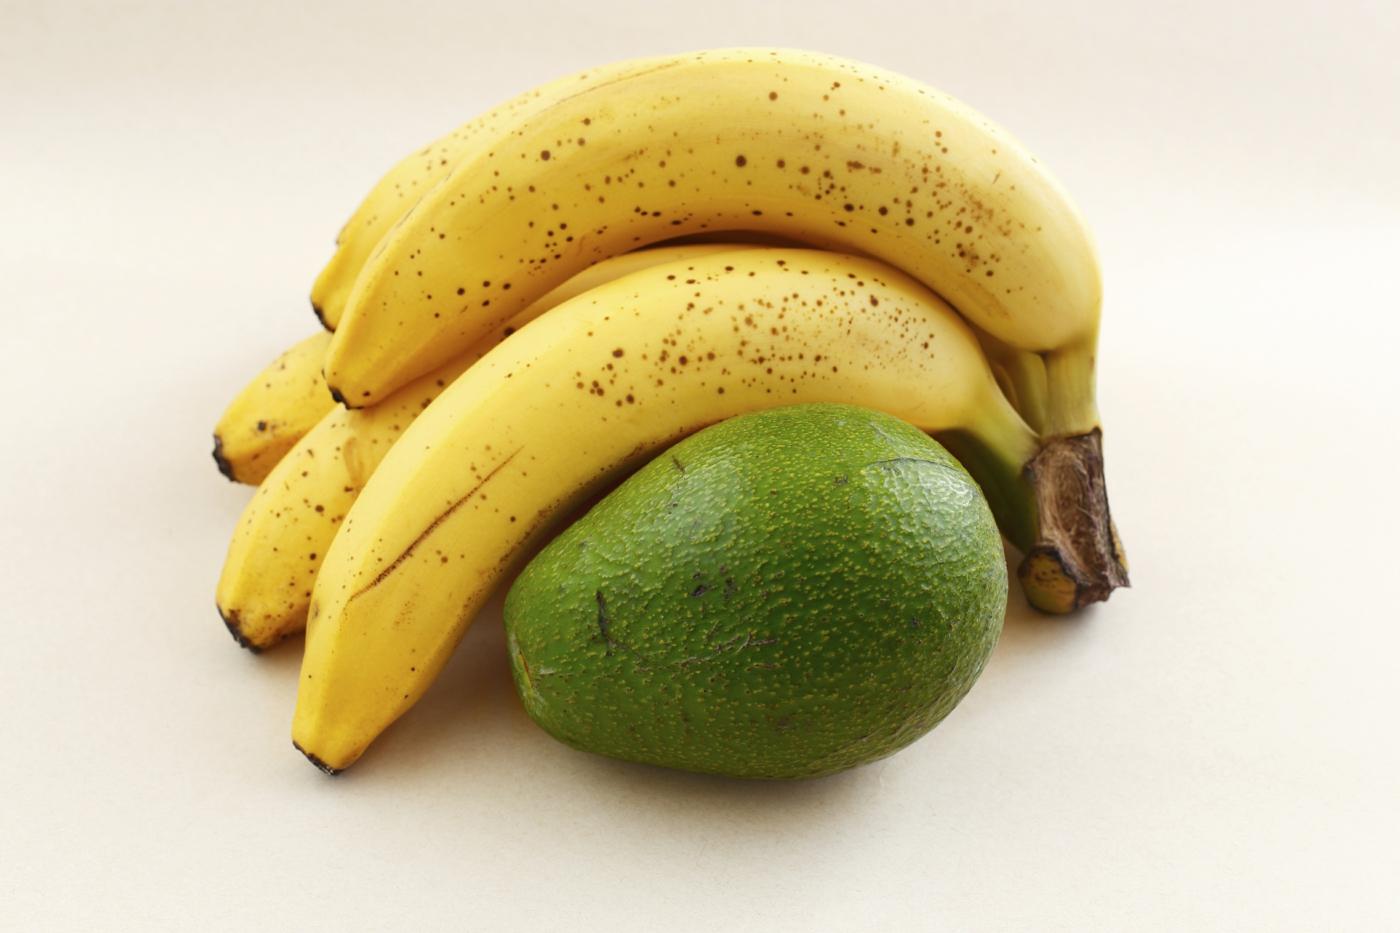 Bananen helfen bei Magen-Darm-Grippe und Avocados regen die Verdauung an